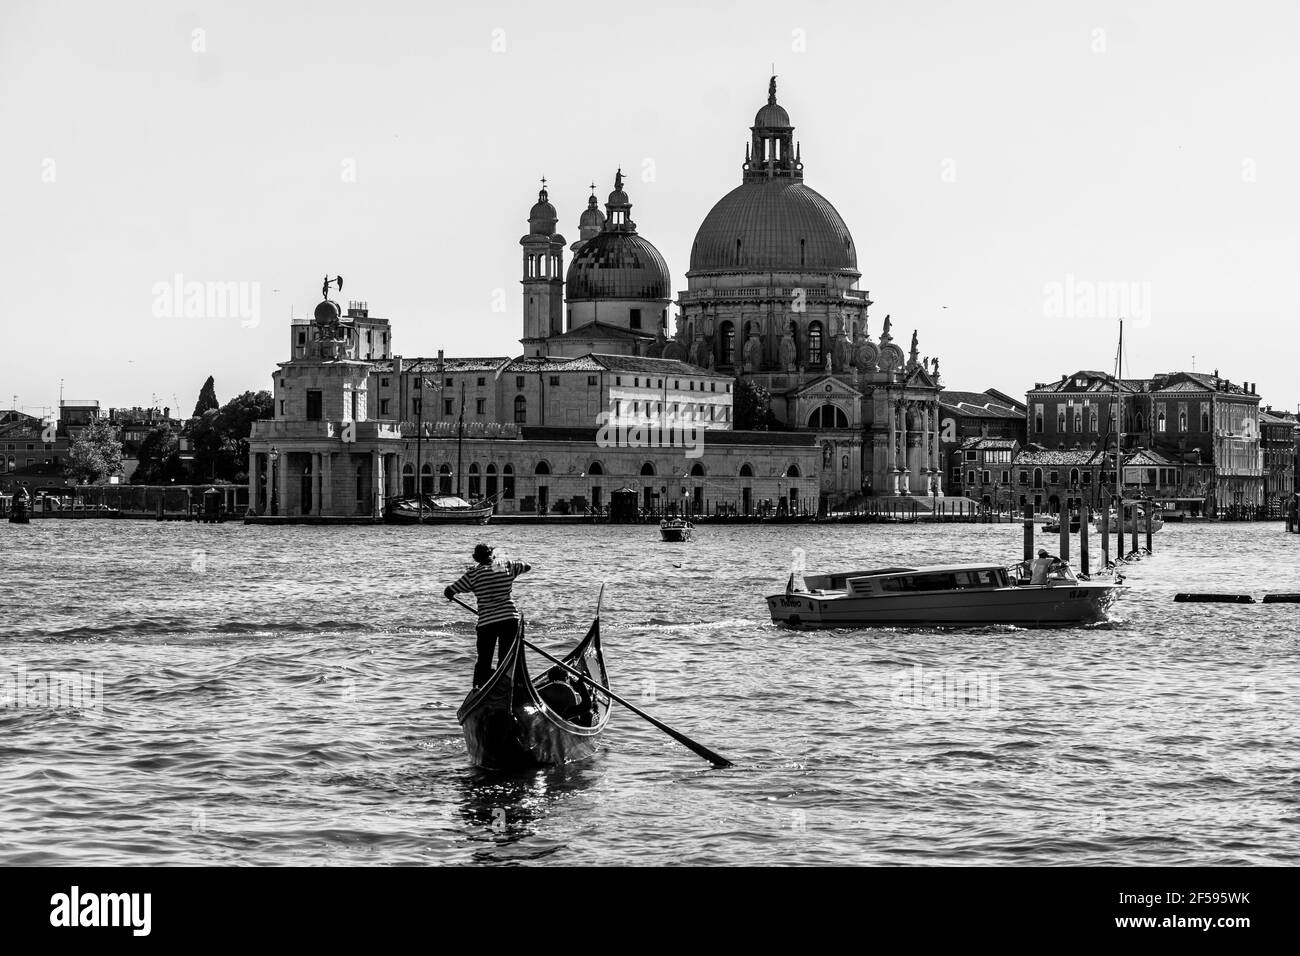 Venise, Italie - juin 22 2020 : une vue classique en noir et blanc d'une gondole traditionnelle qui navigue sur le Grand Canal de Venise avec la Basilique di Santa Banque D'Images